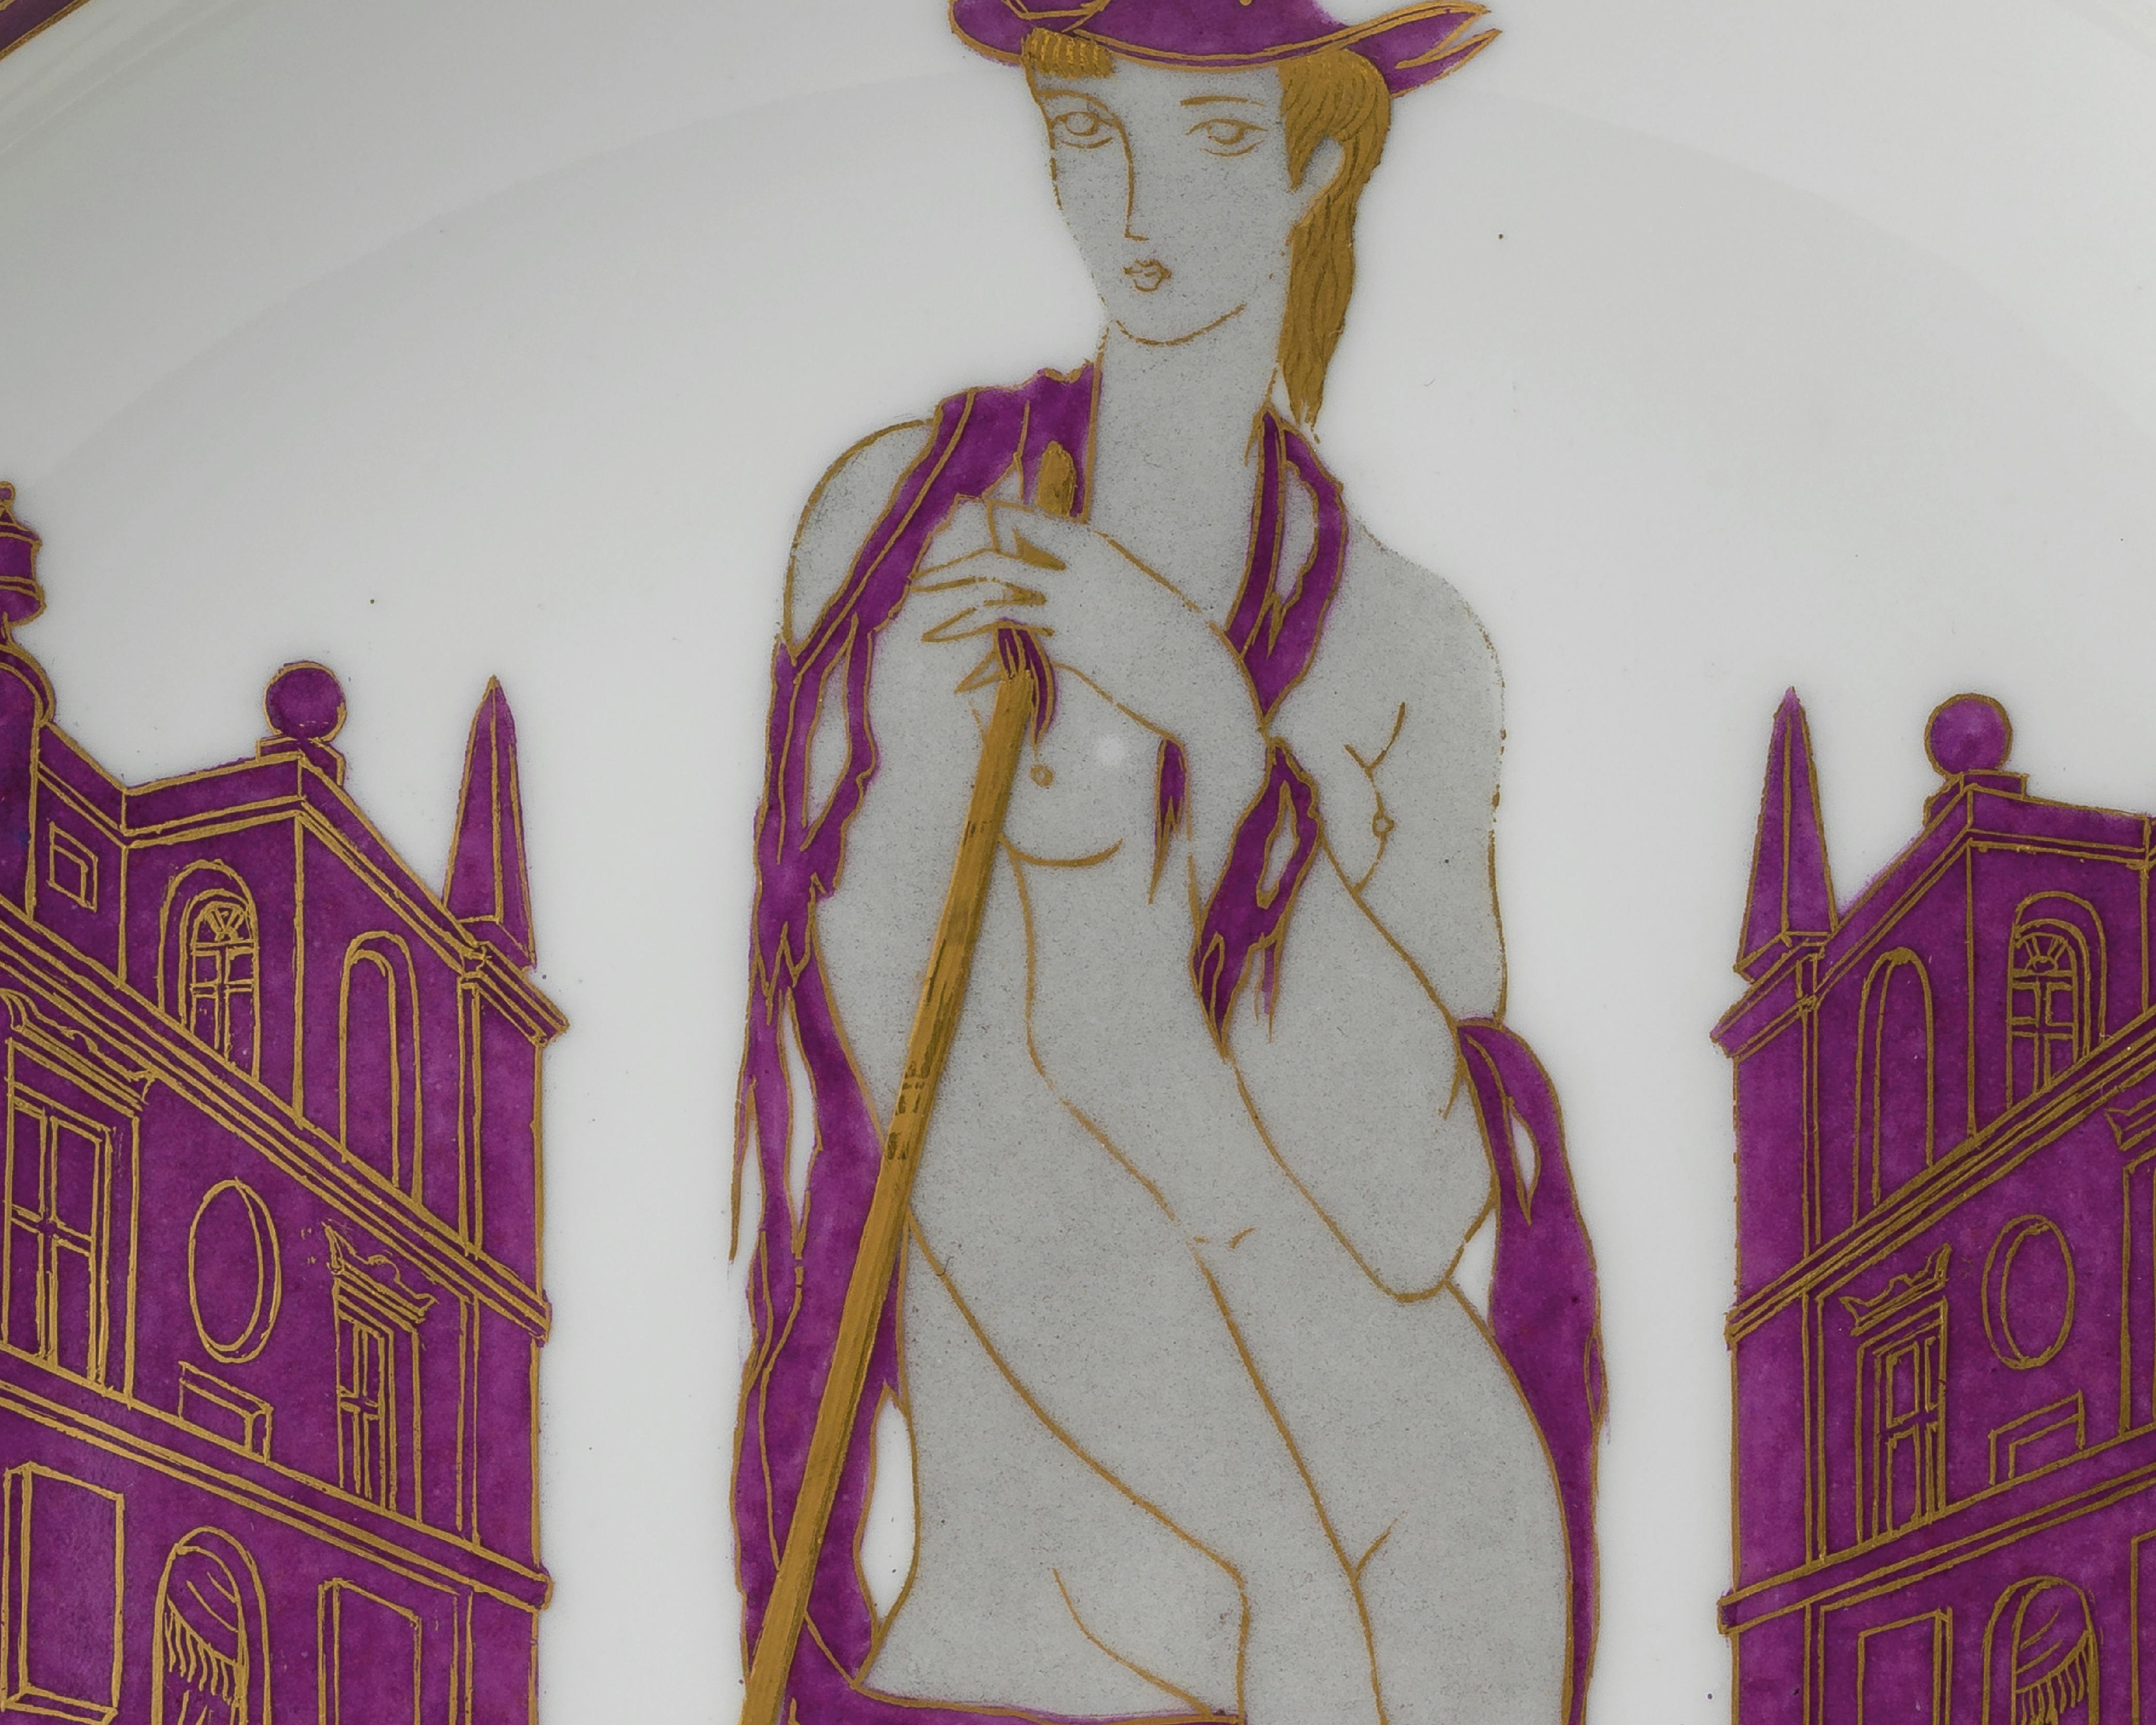 Particolare della decorazione di un piatto raffigurante una figura femminile seminuda circondata da architetture